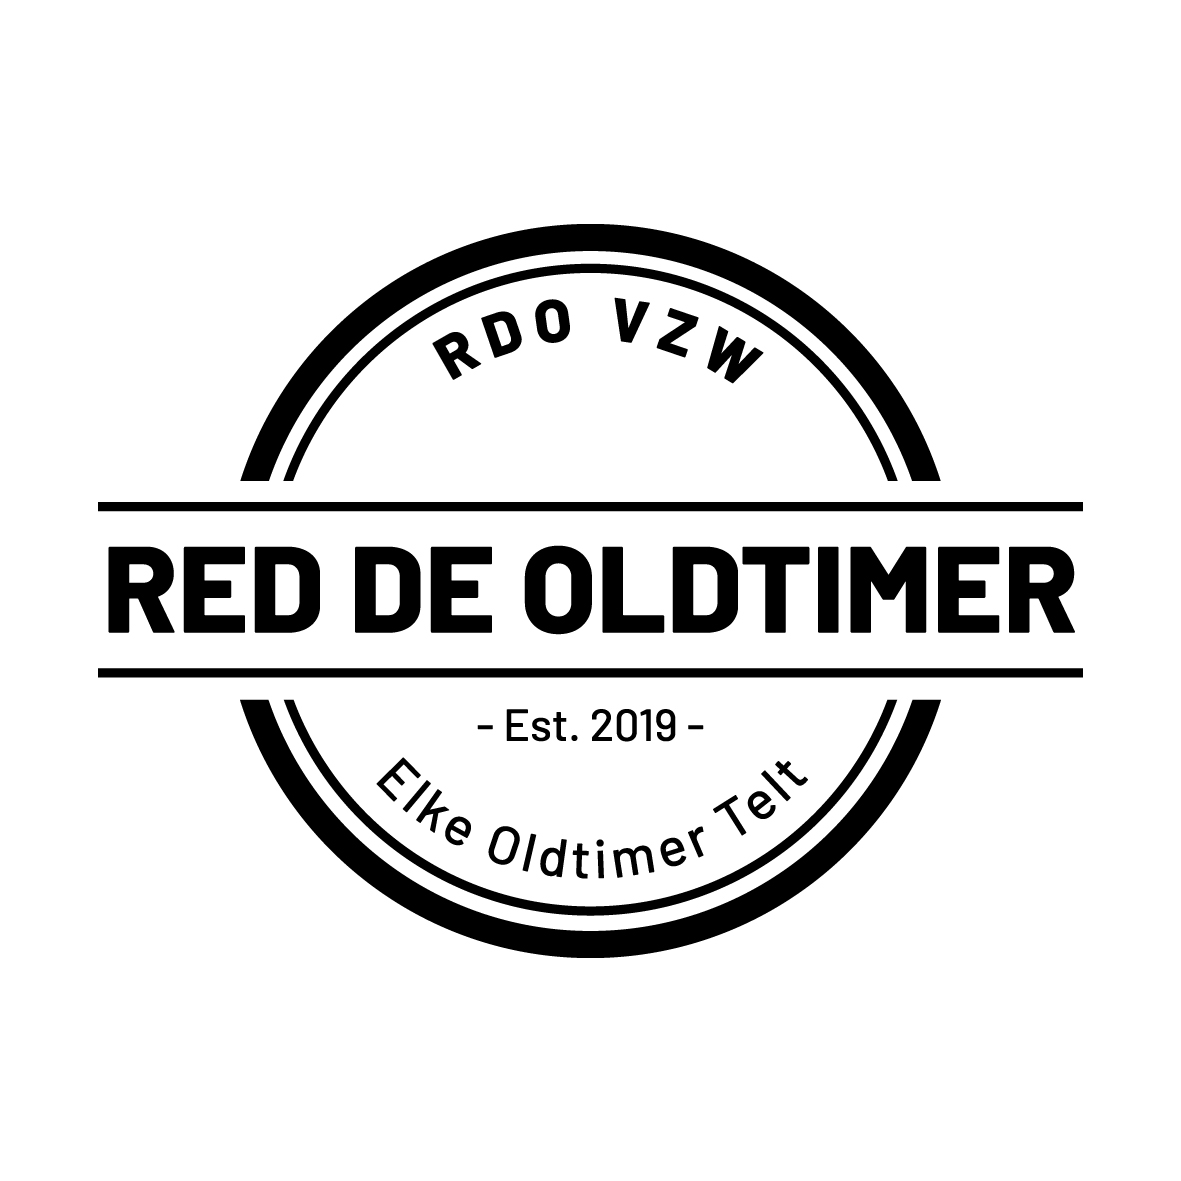 Red de Oldtimer